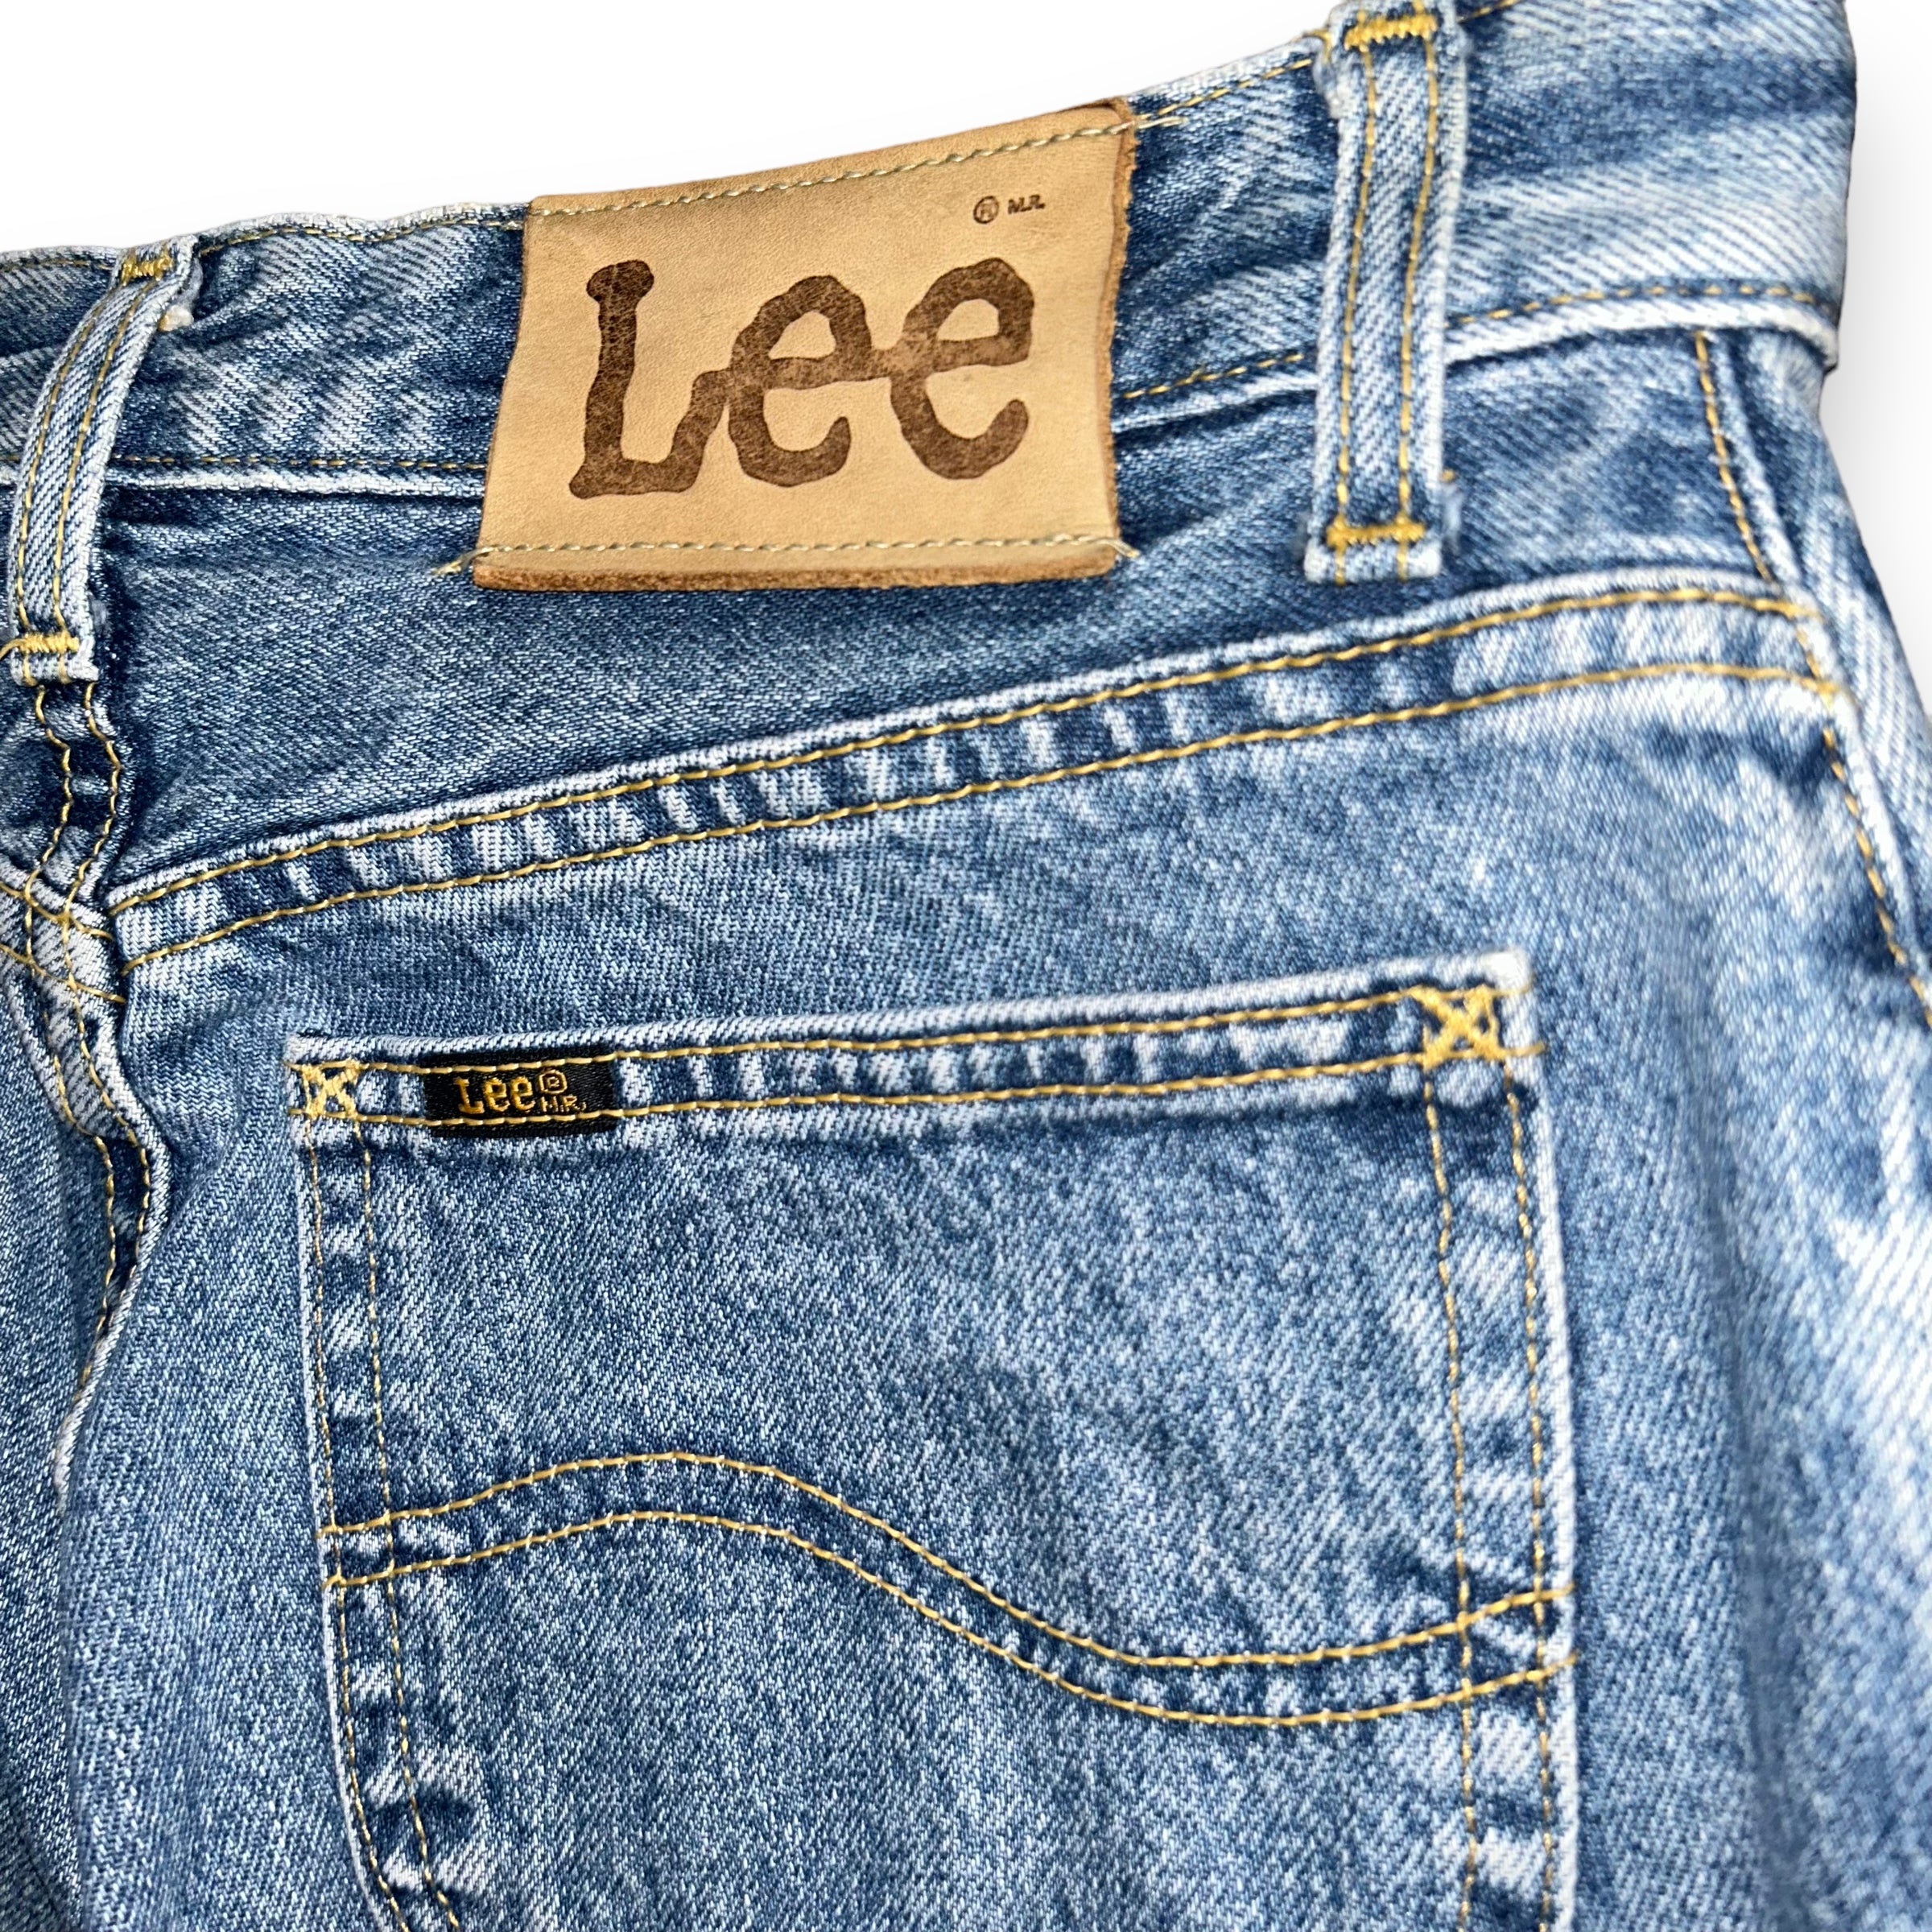 Lee Vintage Jeans (30 US S)